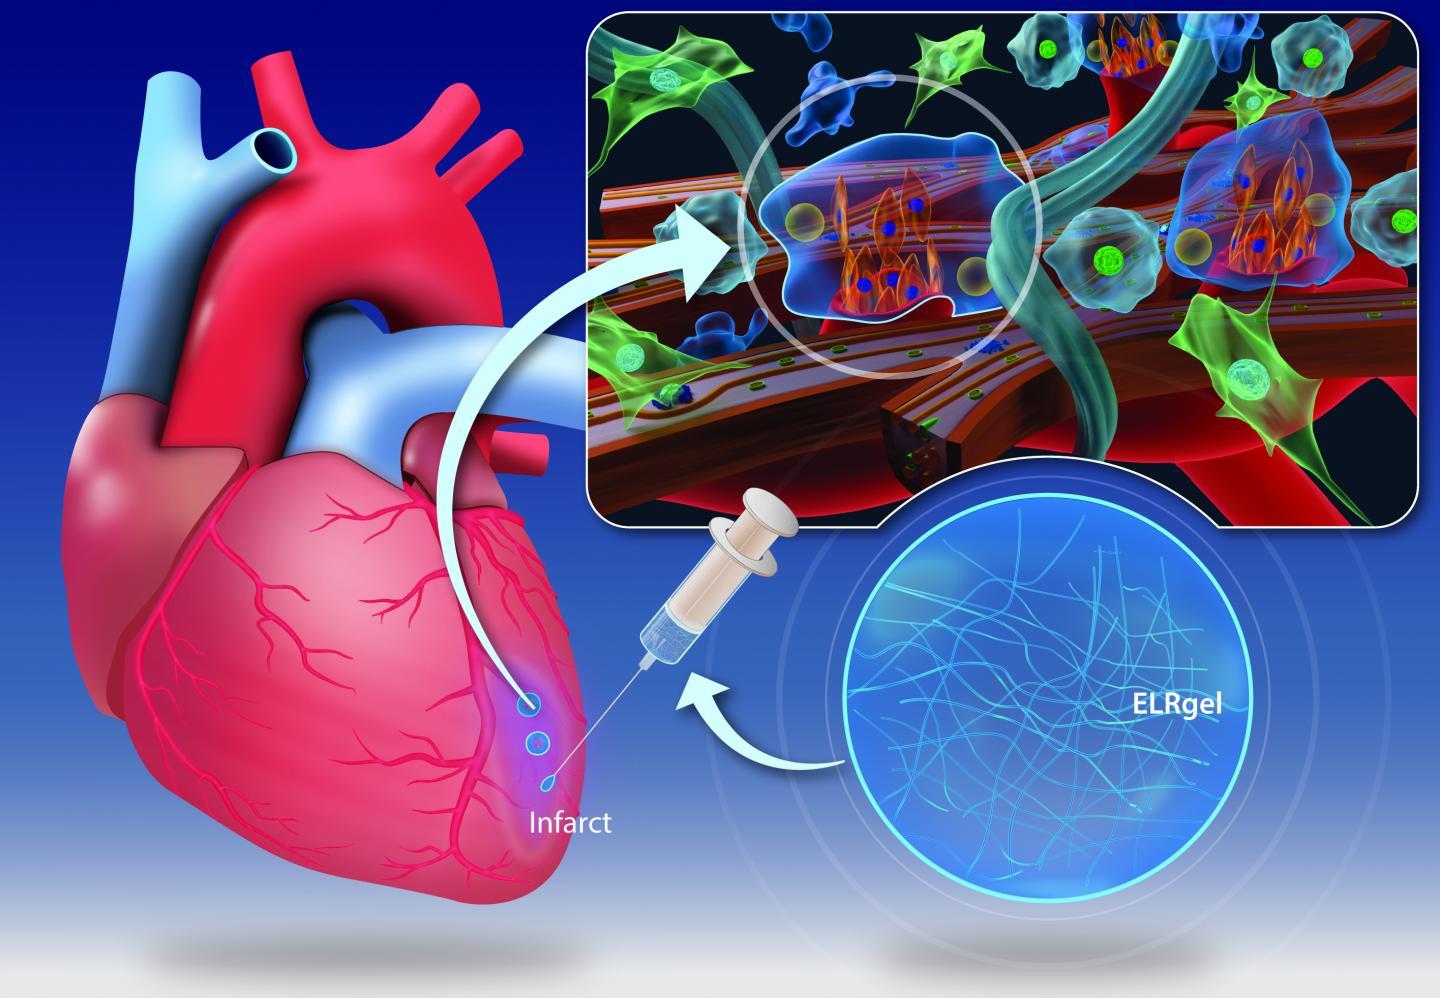 水凝胶注射可能会改变心脏病发作后心肌的愈合方式